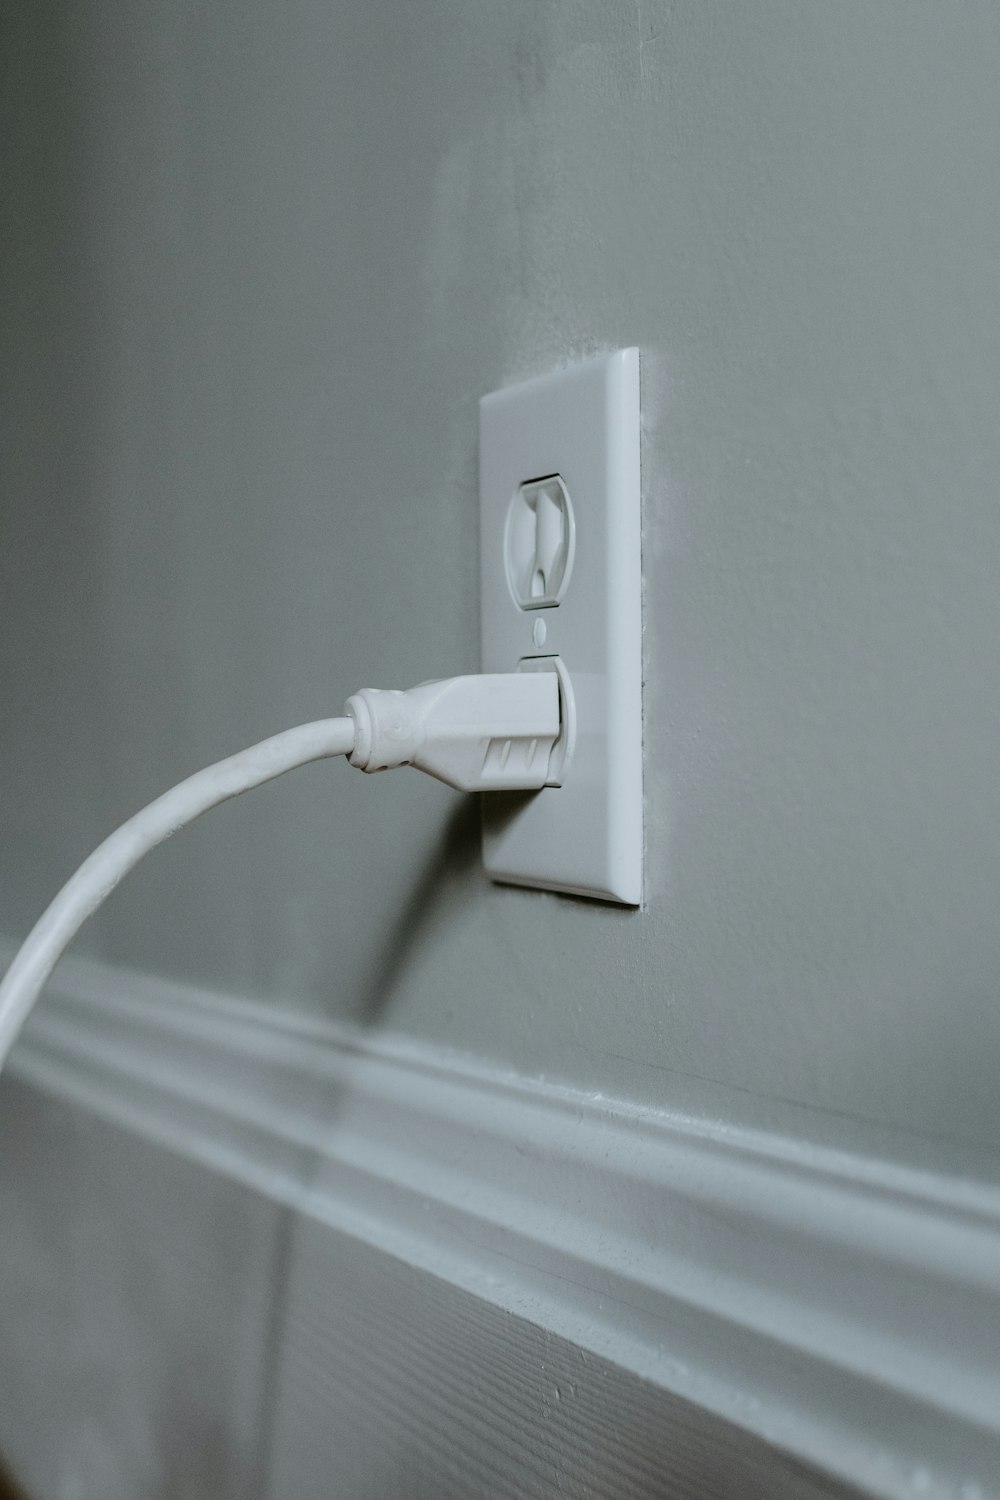 Cable USB blanco enchufado en toma de corriente blanca